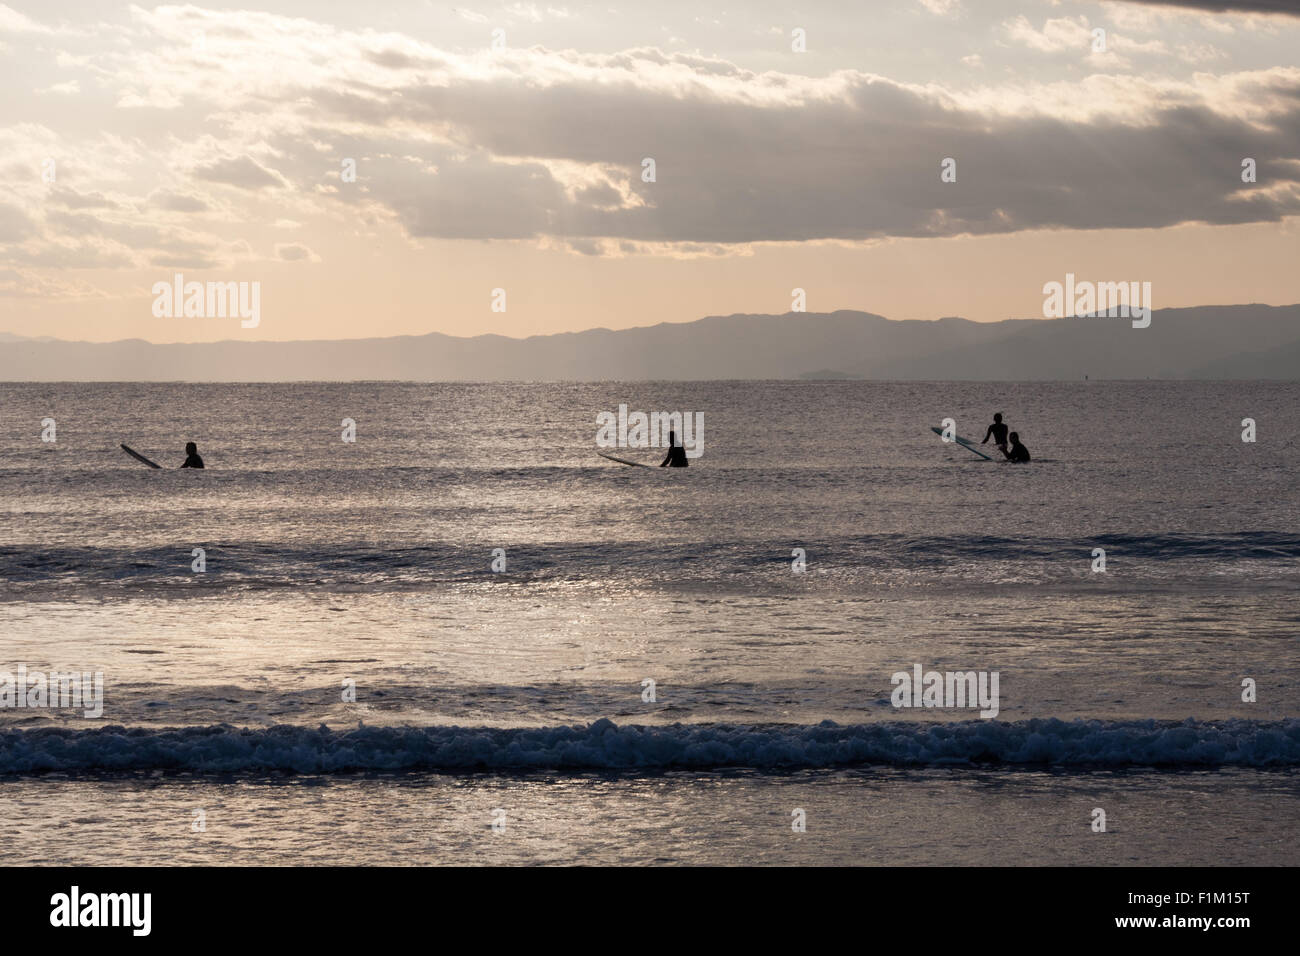 Quattro surfers seduti sulle loro tavole da surf in mare nuvole Foto Stock